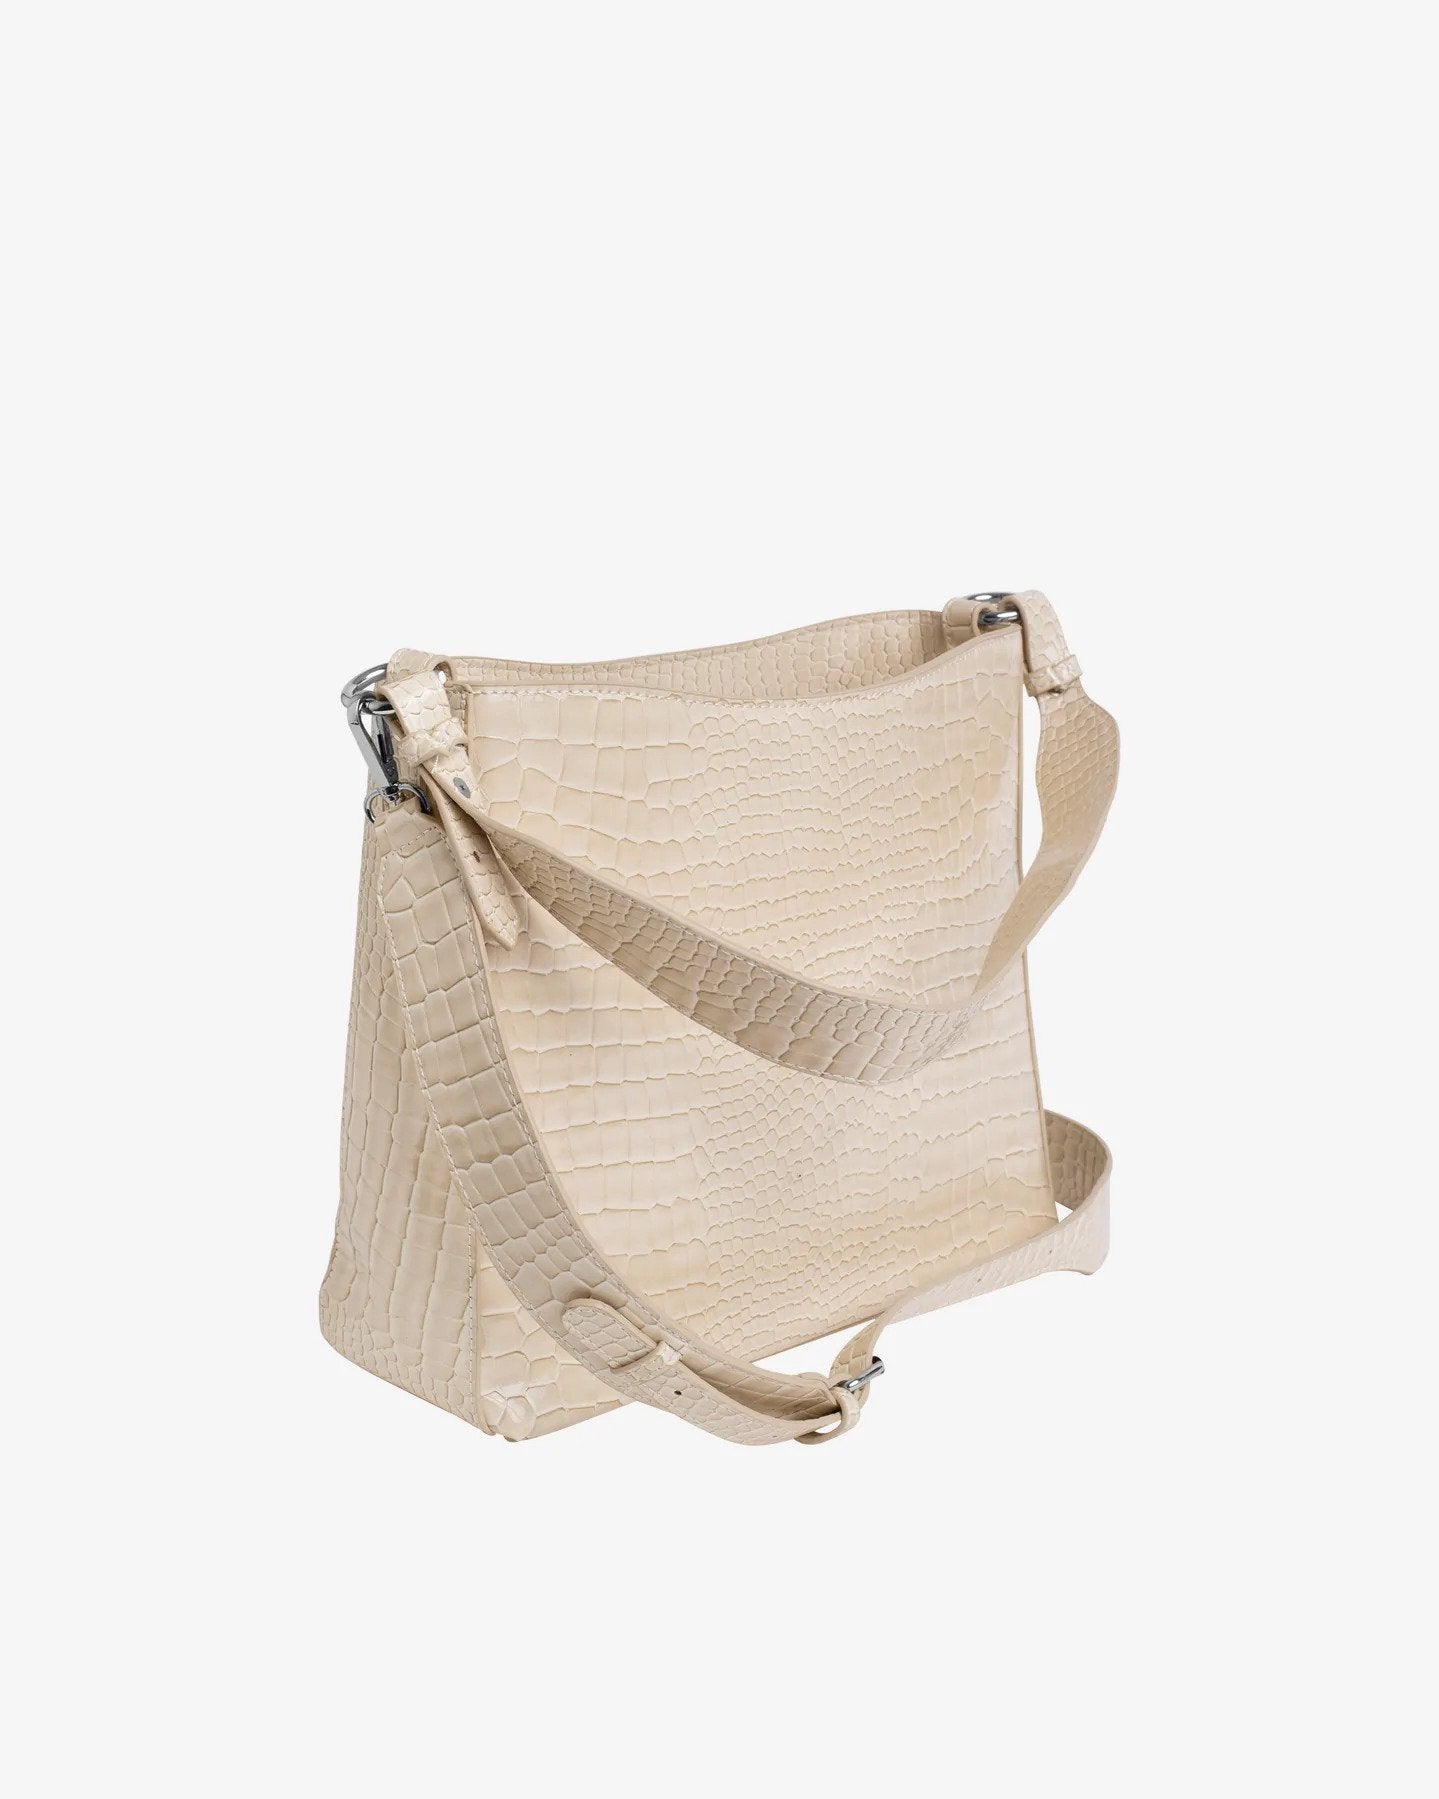 HVISK - The ''Amble'' Shoulder Bag - Sand Beige